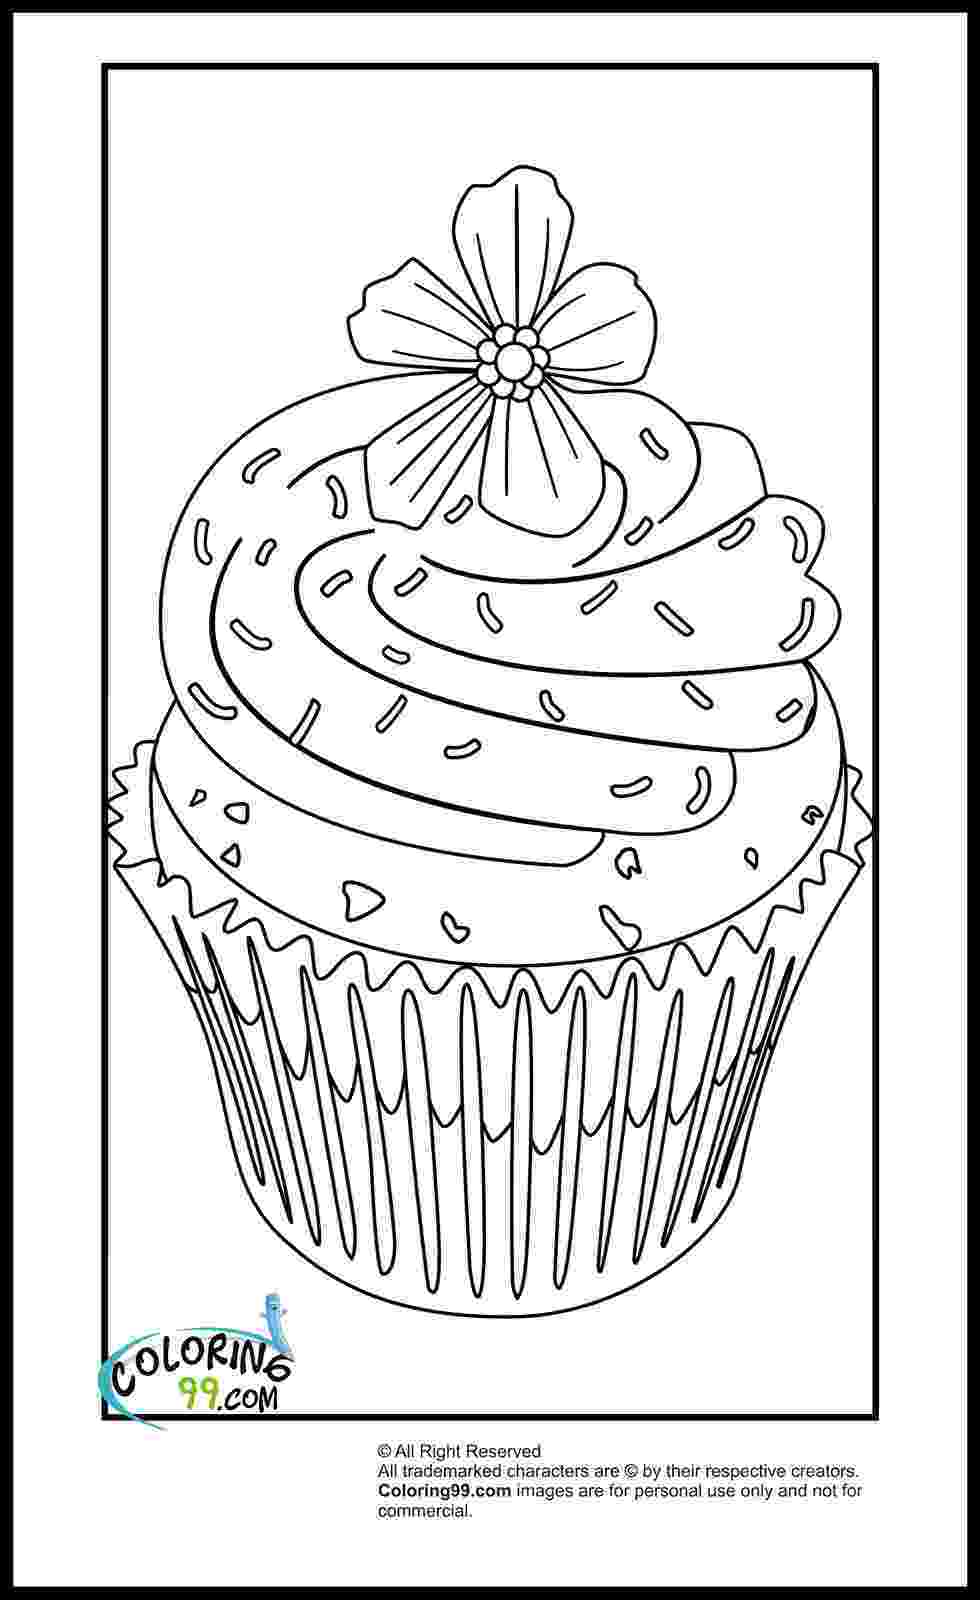 coloring pages cupcakes cupcake coloring pages minister coloring coloring pages cupcakes 